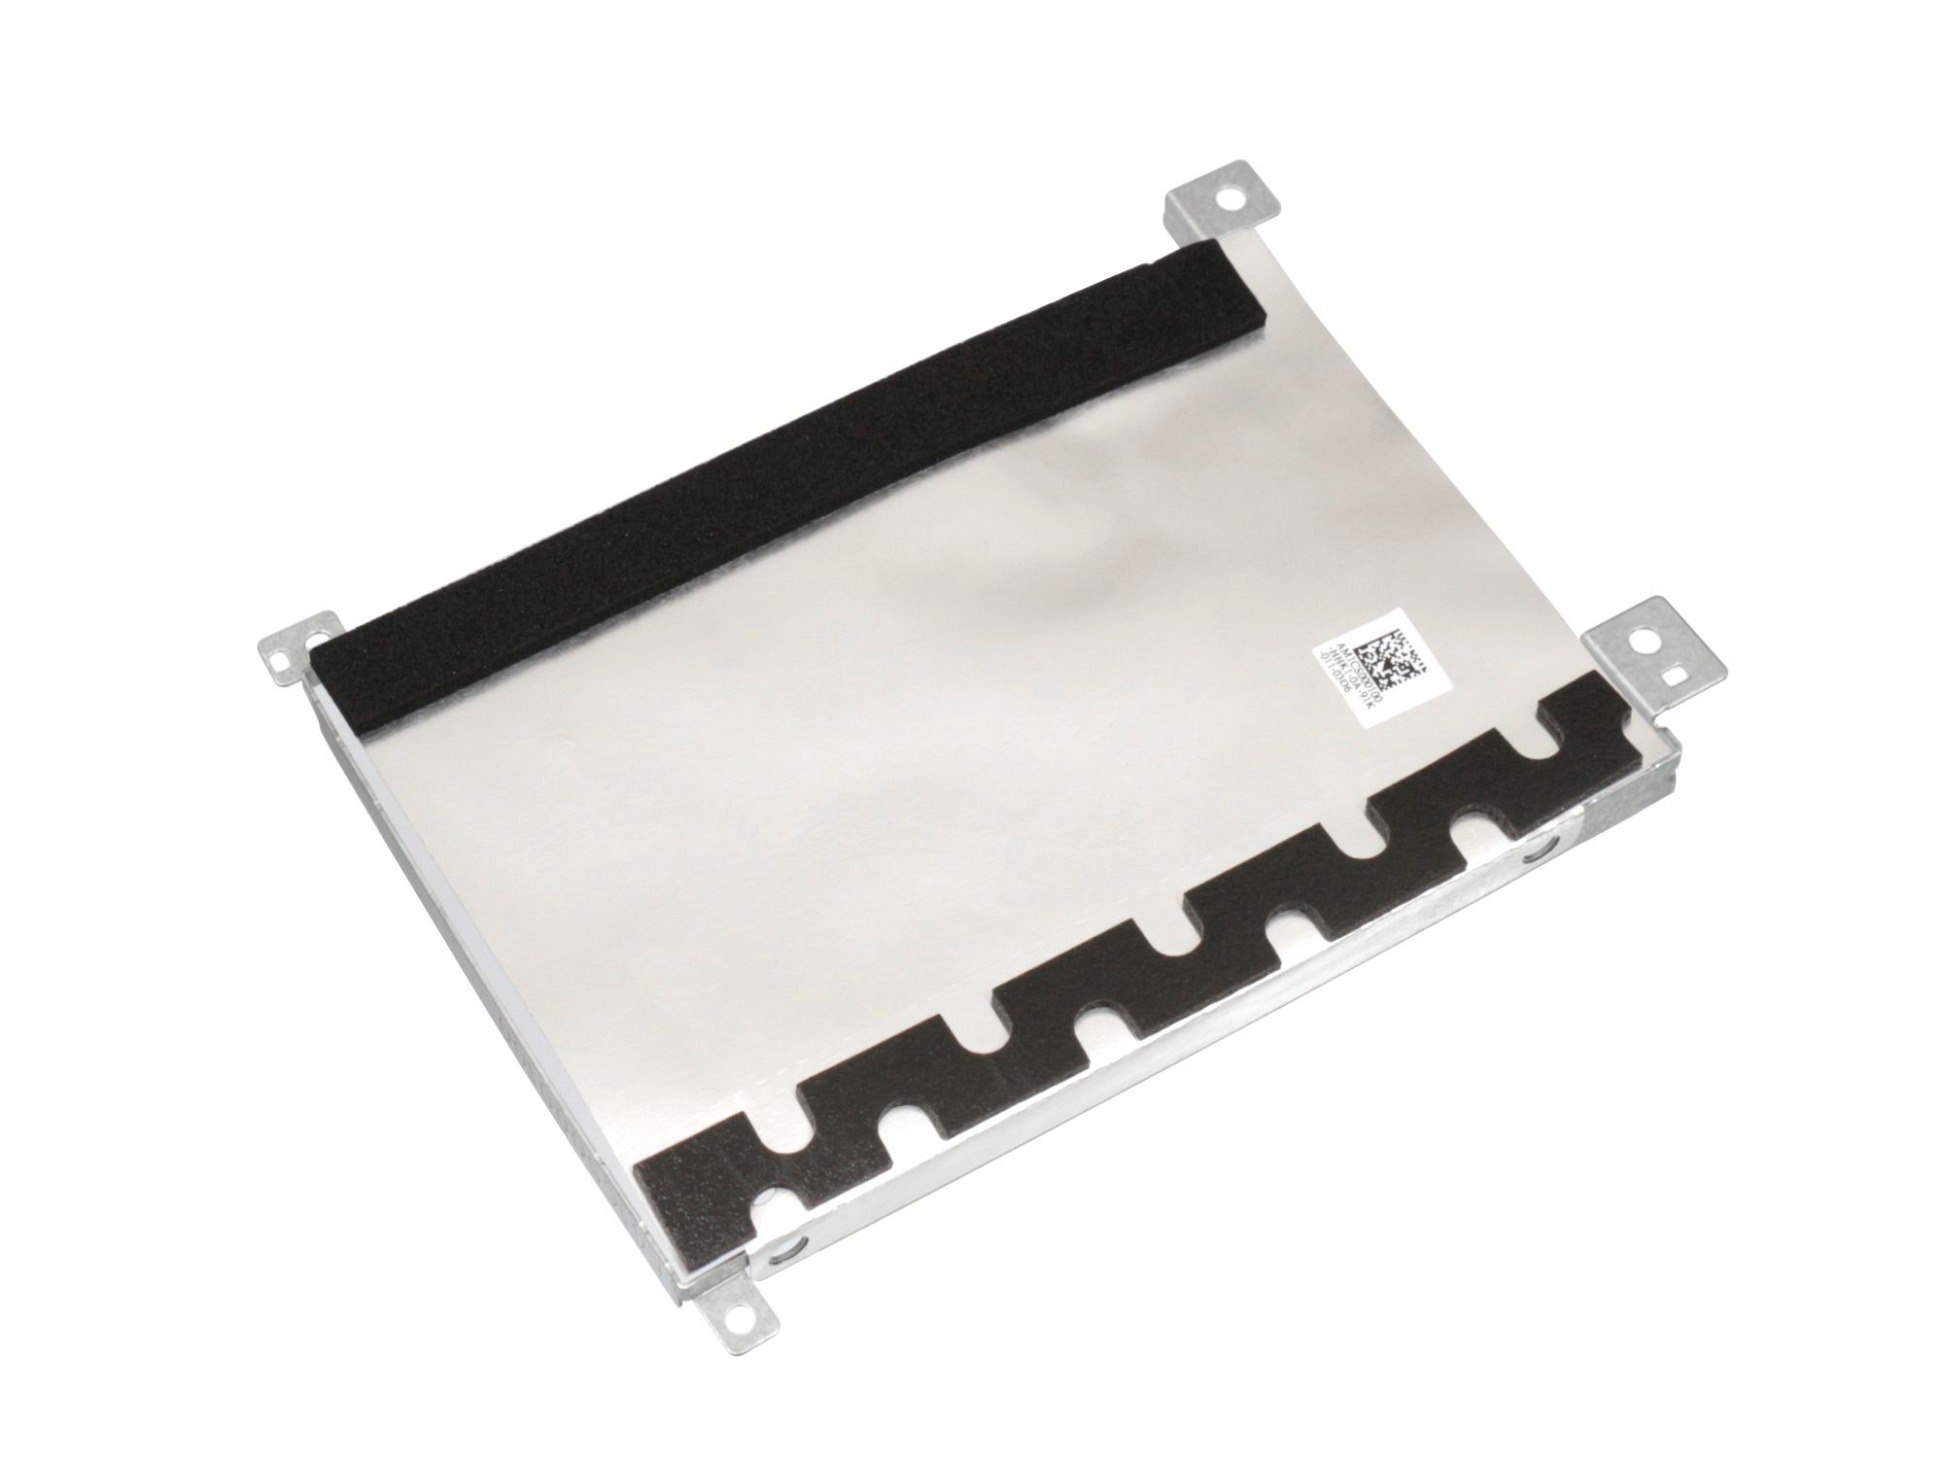 Festplatten-Einbaurahmen für den 1. Festplatten Schacht Original für Lenovo IdeaPad S145-14IIL (81W6)